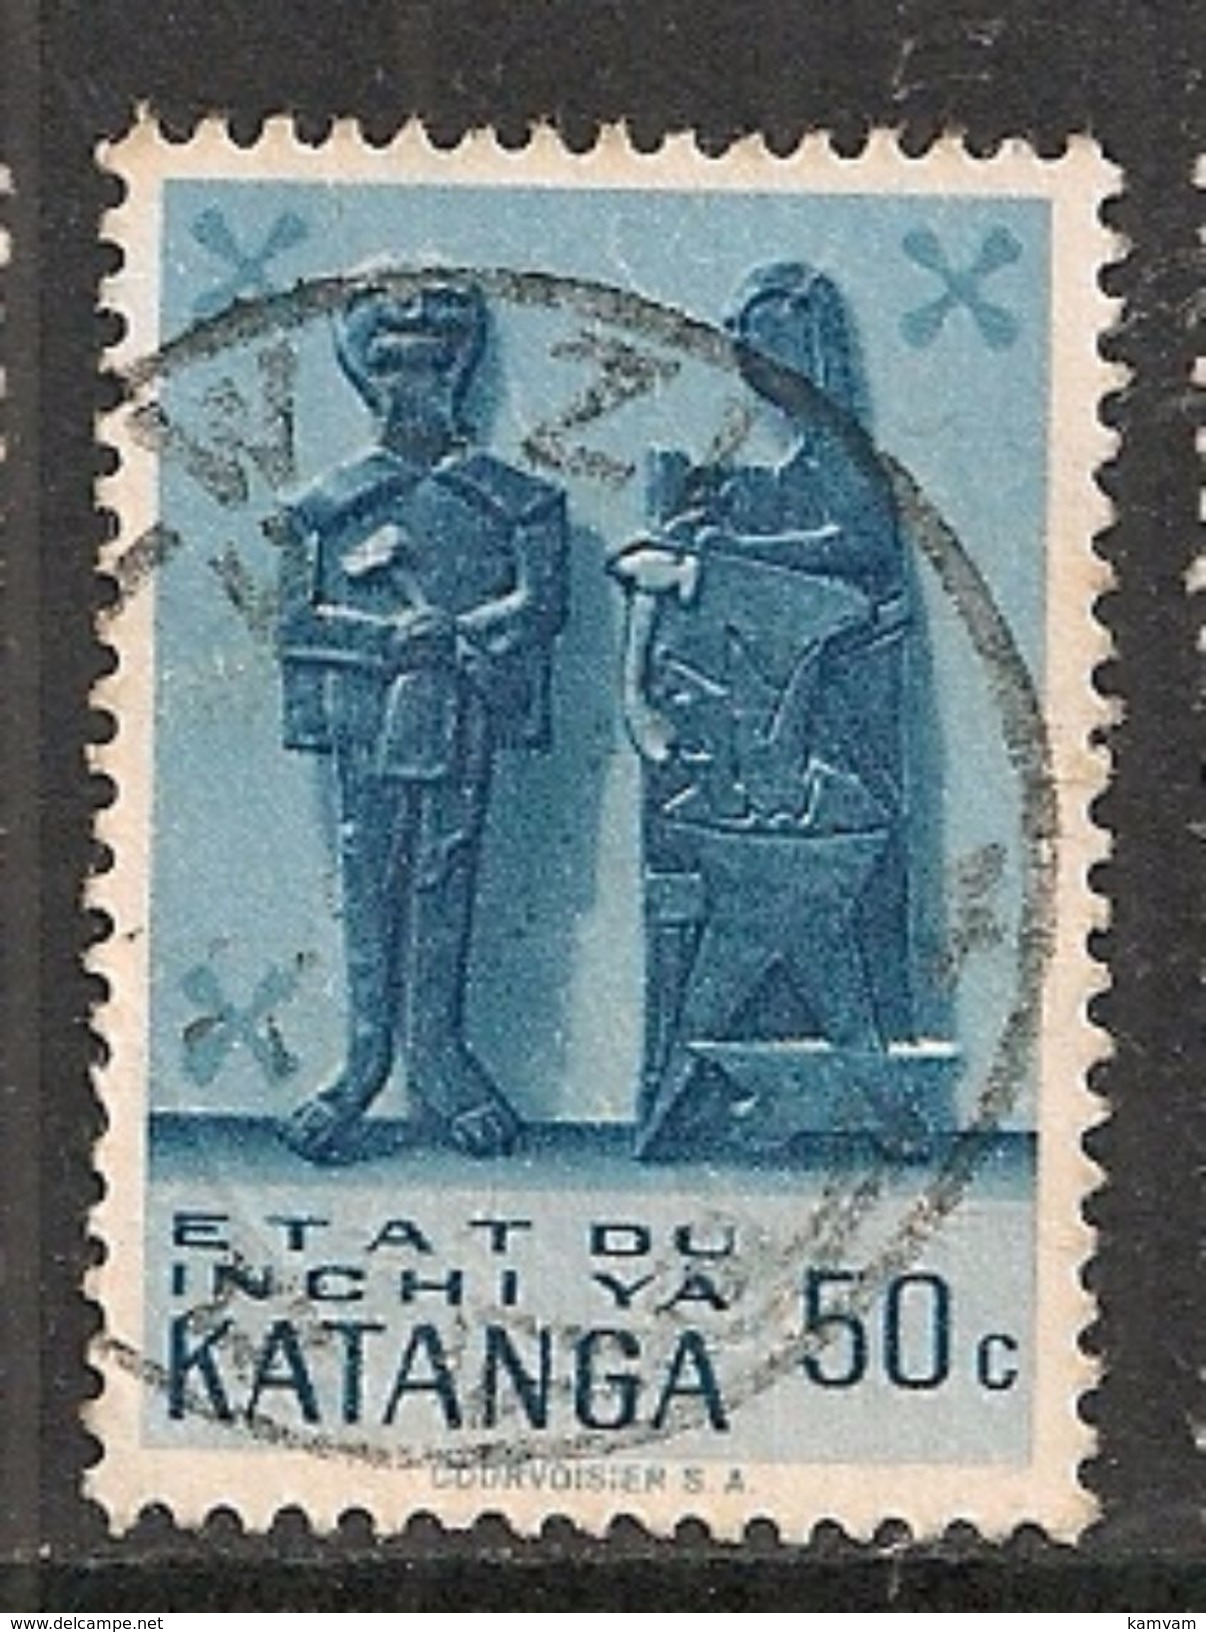 KATANGA 54 KOLWEZI - Katanga